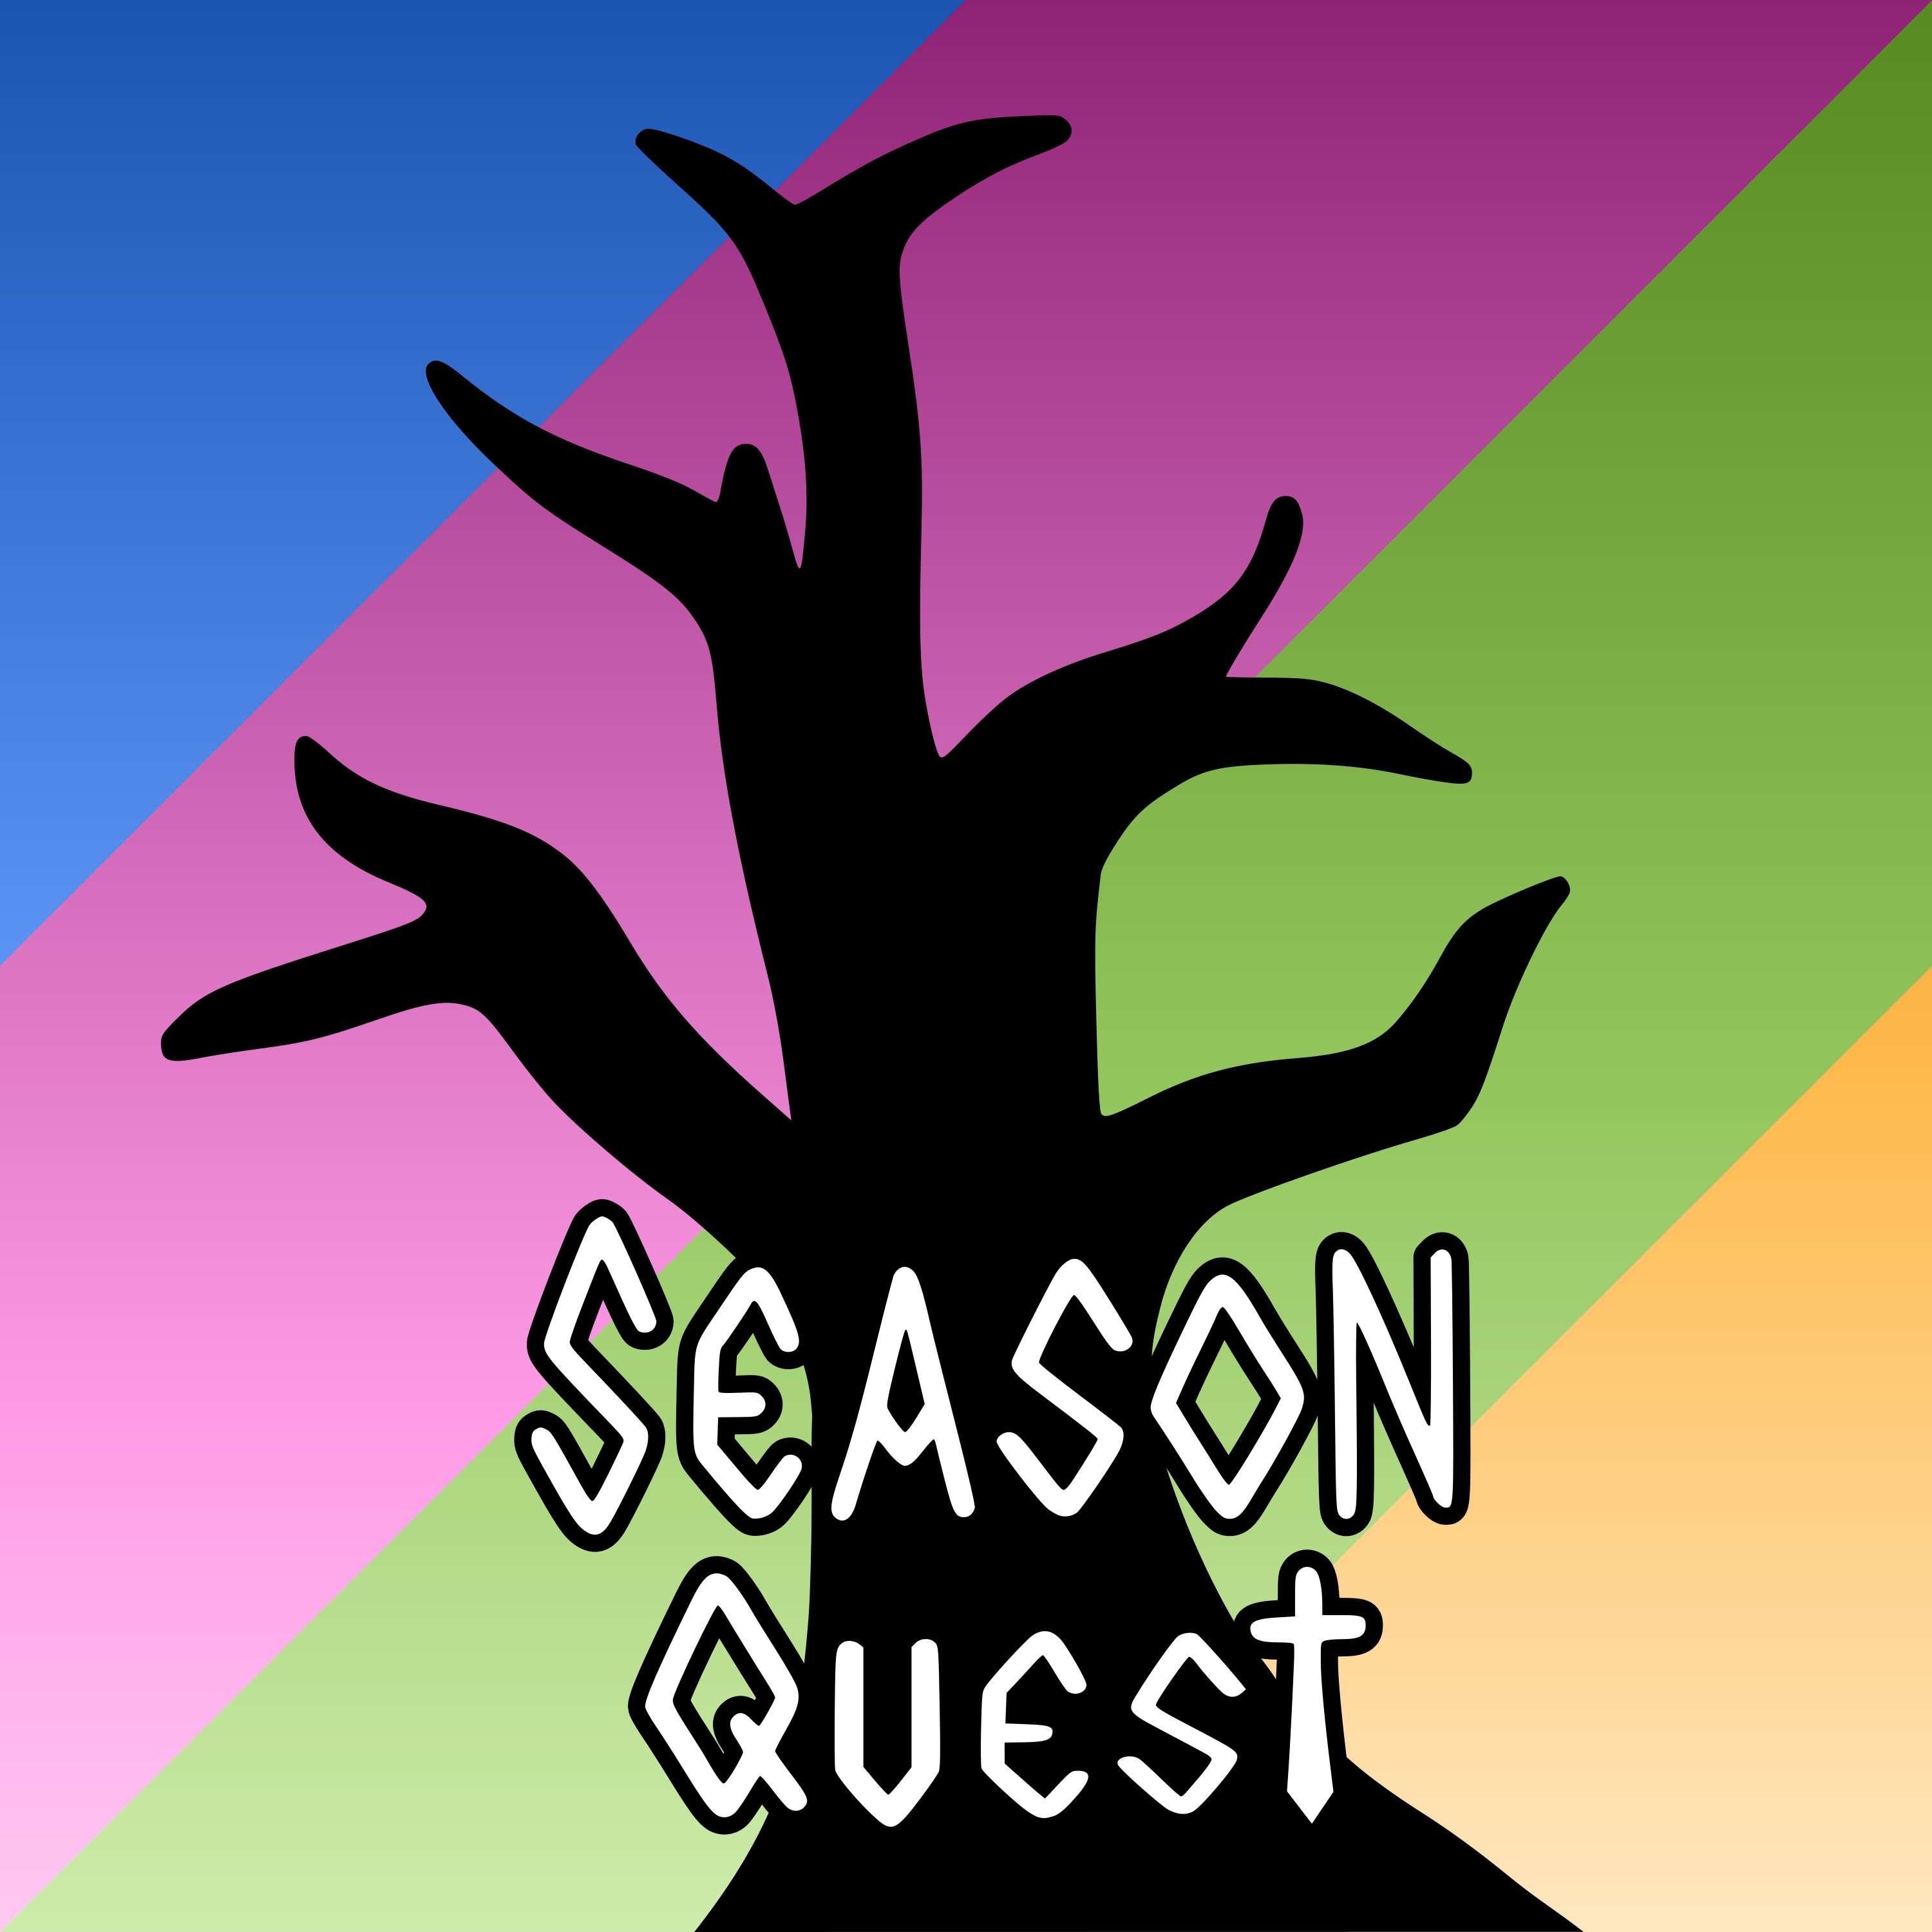 APRIL FOOL'S (BONUS): No More Season Quest?